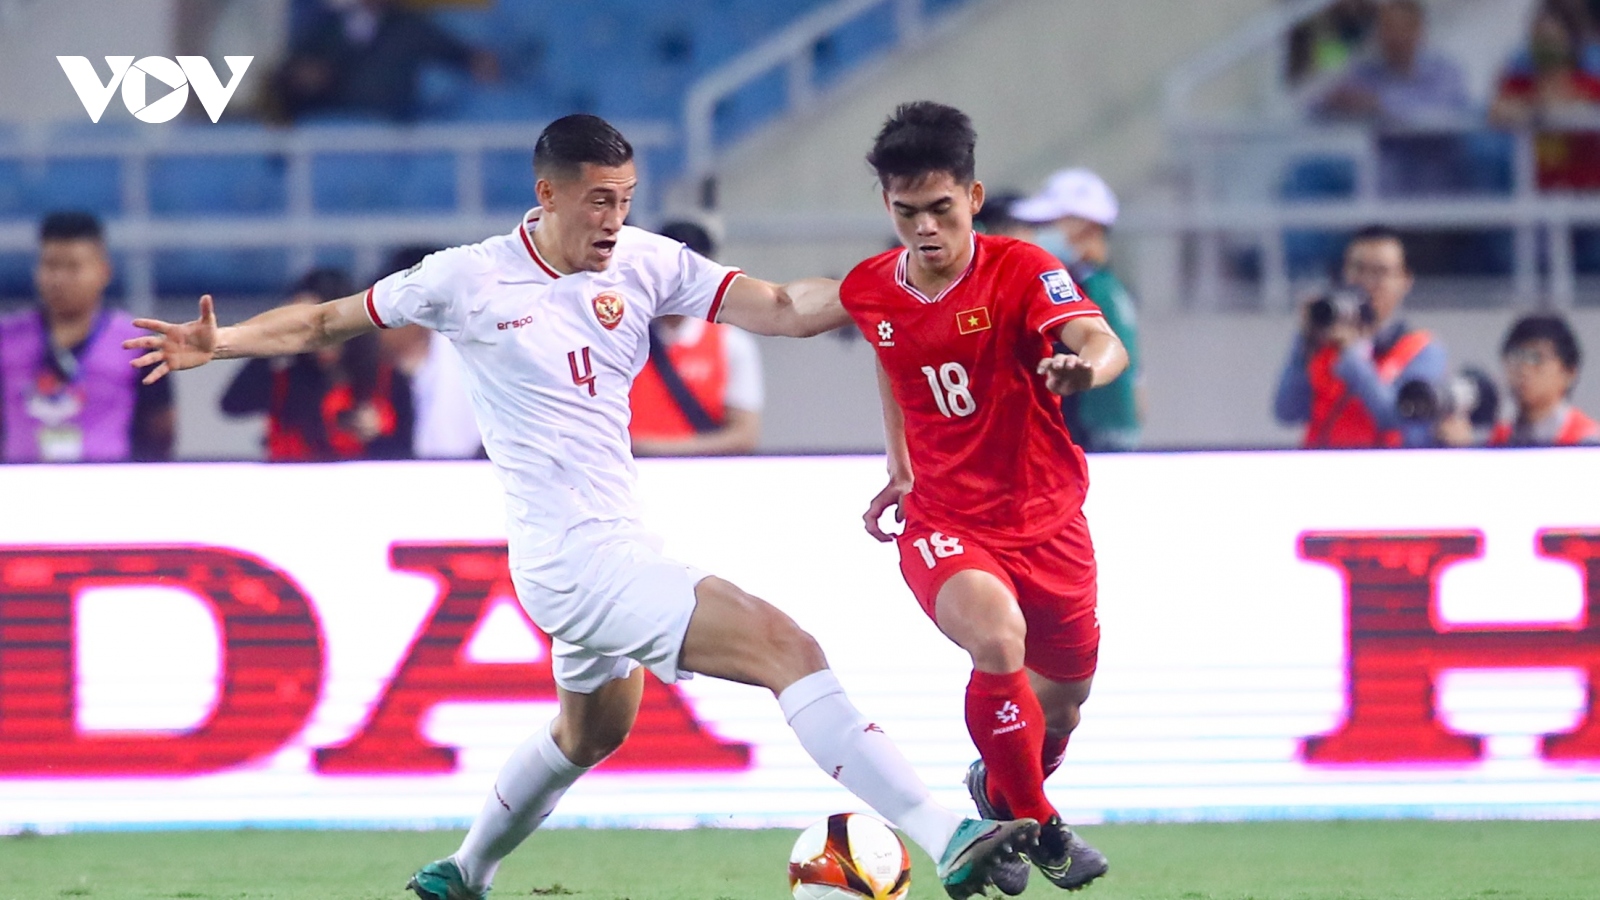 BXH FIFA: ĐT Việt Nam tụt sâu, Indonesia tăng hạng nhanh nhất thế giới